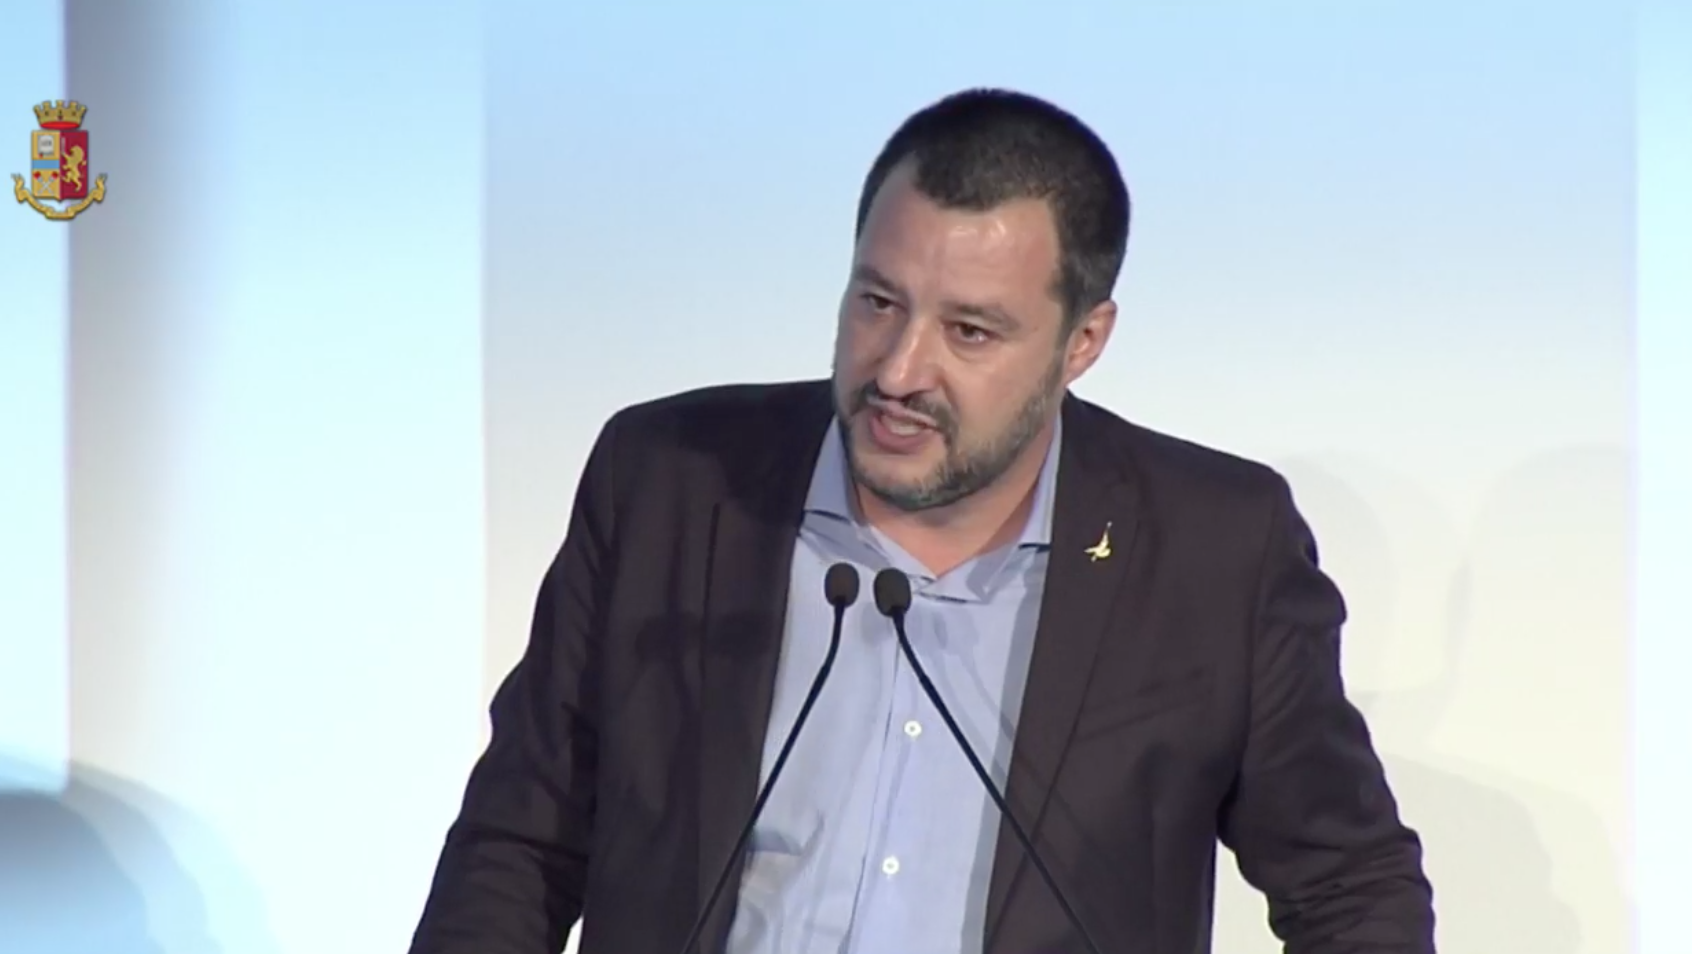 Napoli. Spari alla piccola, Salvini: “Non mi darò pace finché i responsabili non saranno arrestati”